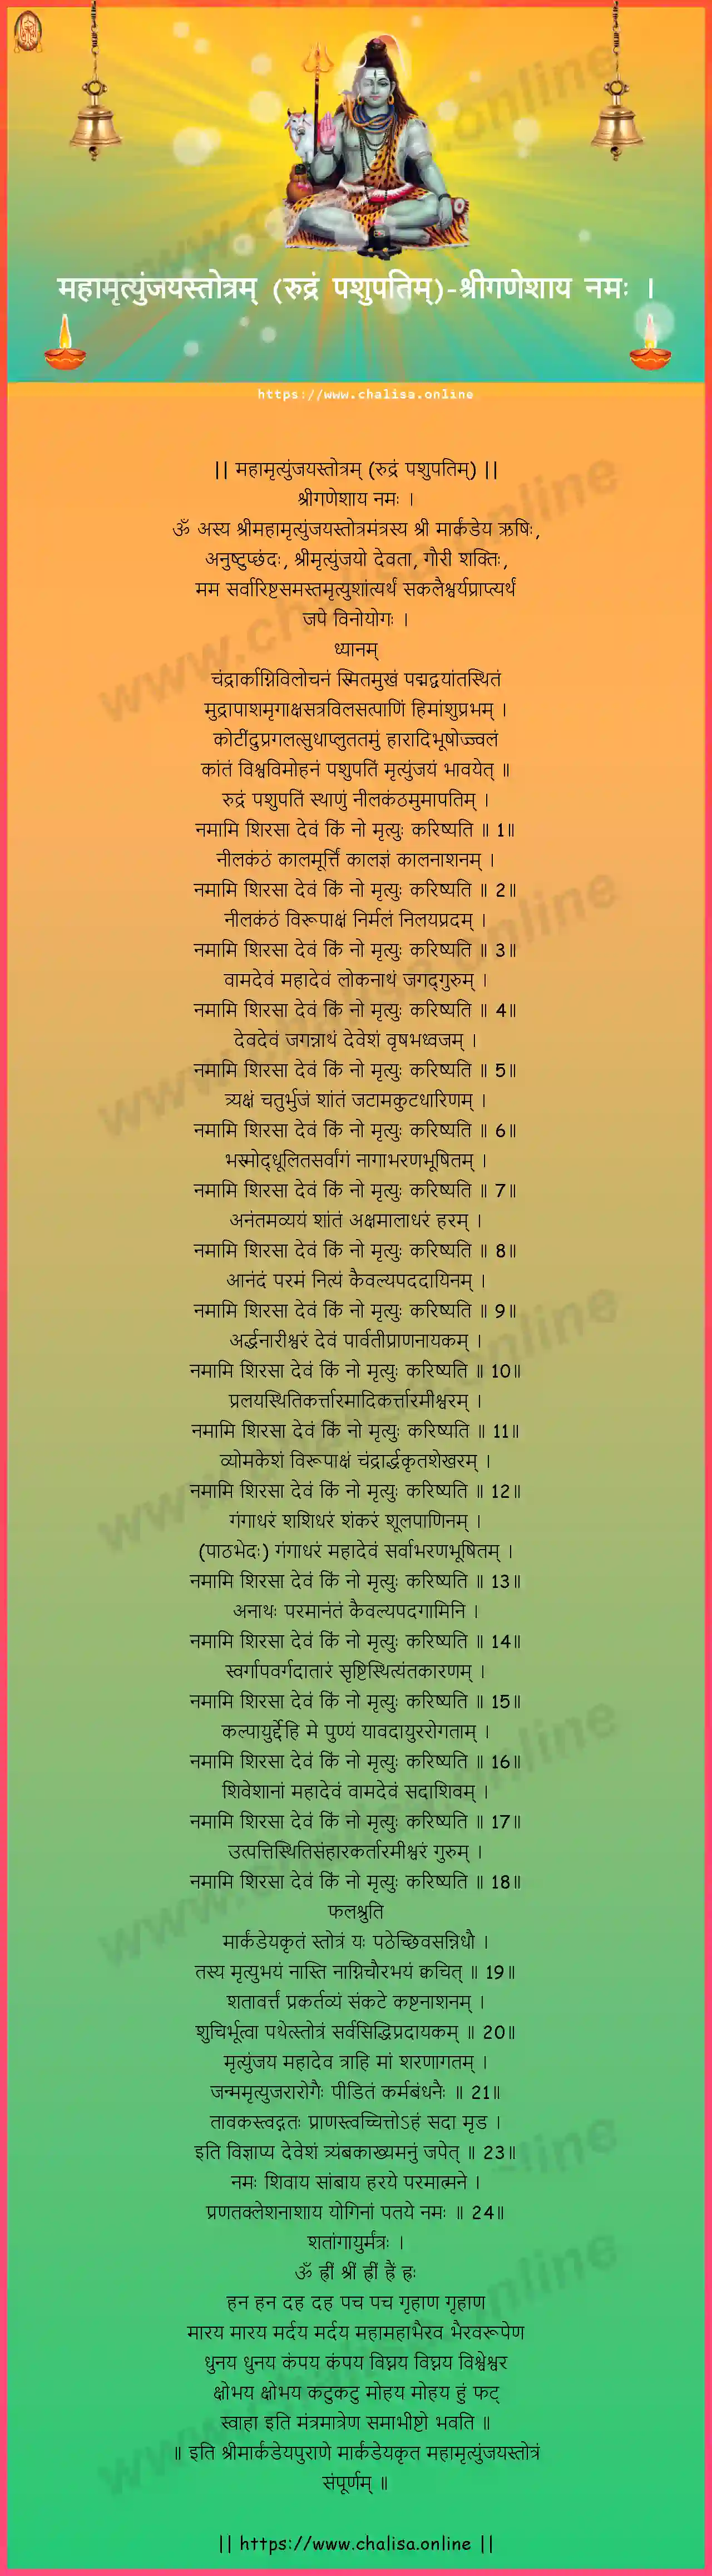 sriganesaya-namah-maha-mrutyunjaya-stotram-rudram-pasupatim-konkani-konkani-lyrics-download